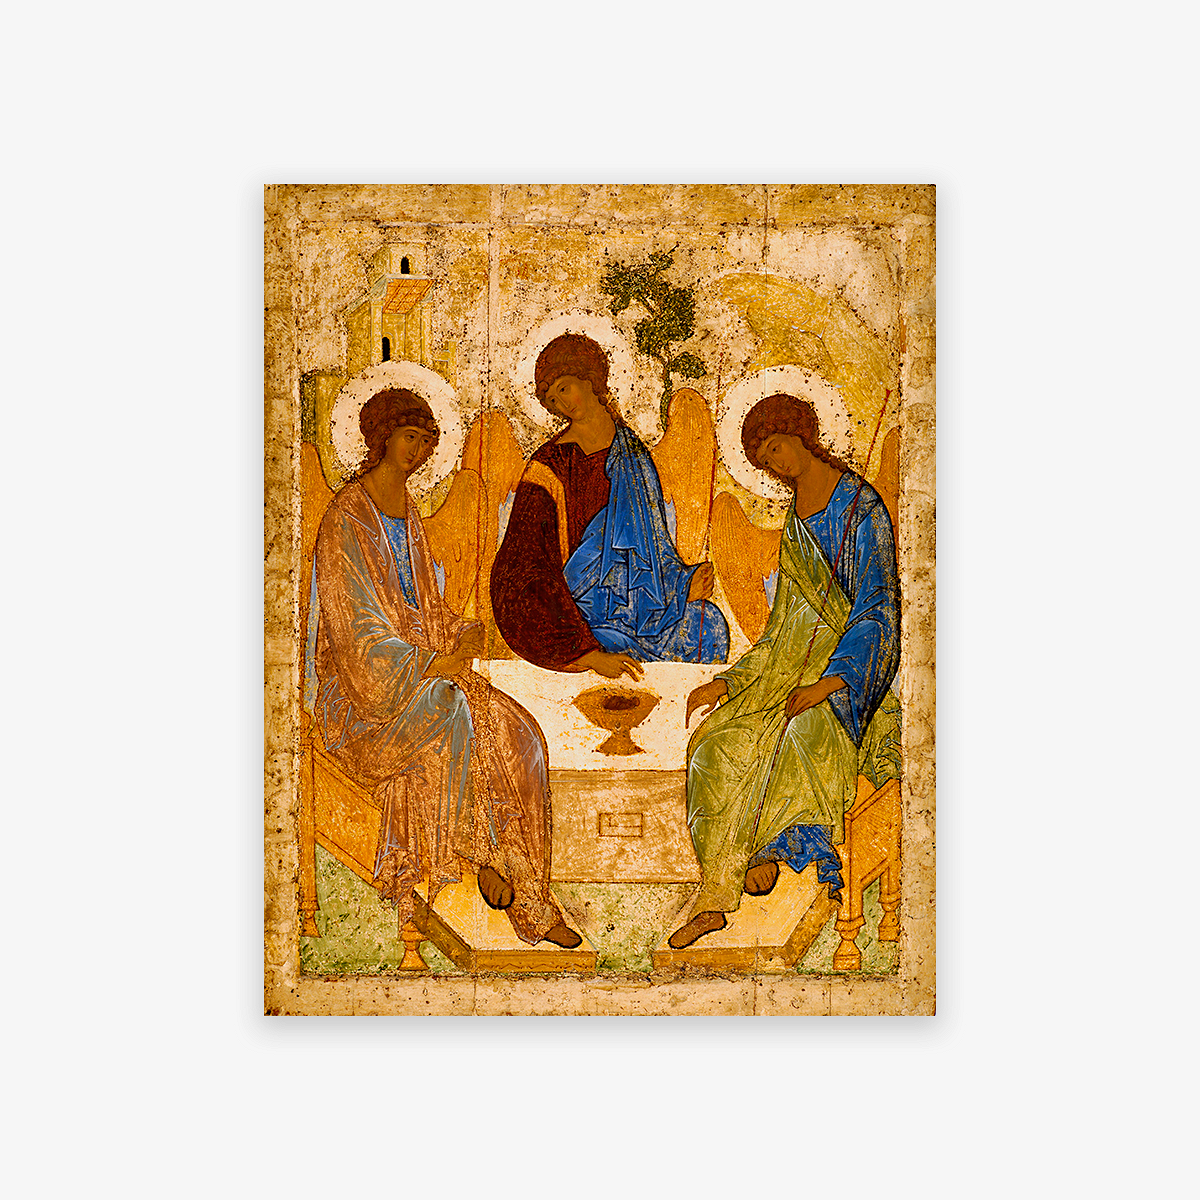 Троица» раздора: почему перемещение иконы из музея в храм вызывает столько  споров - Афиша Daily